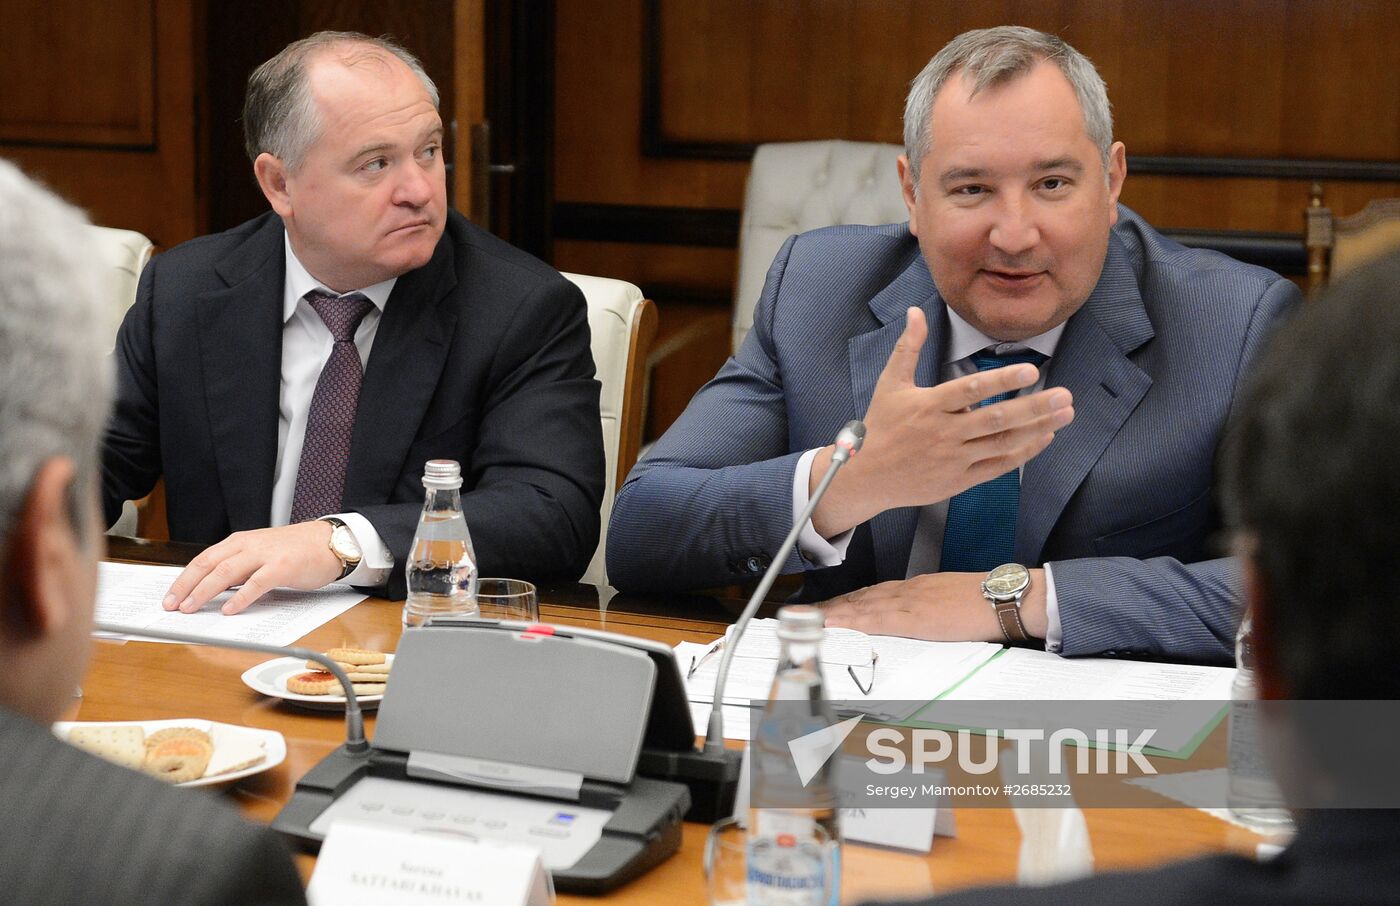 Deputy Prime Minister Dmitry Rogozin at talks with Iranian Vice President Sorena Sattari